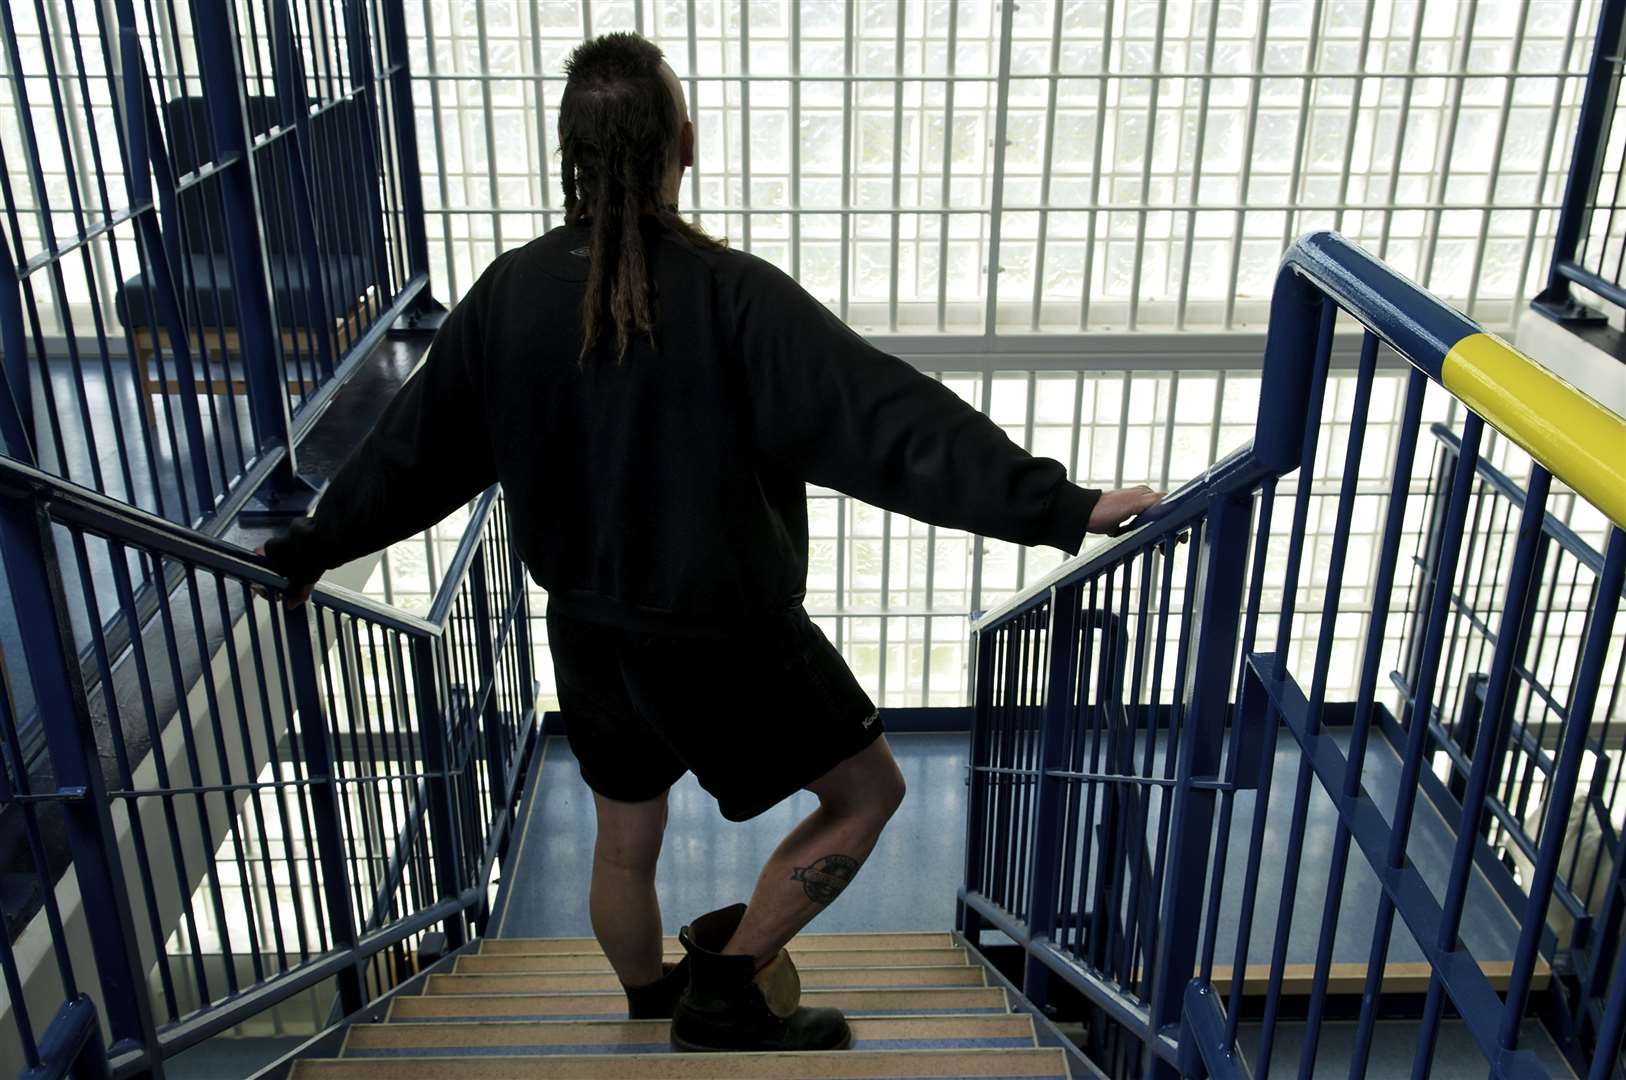 A long-term prisoner at HMP Swaleside